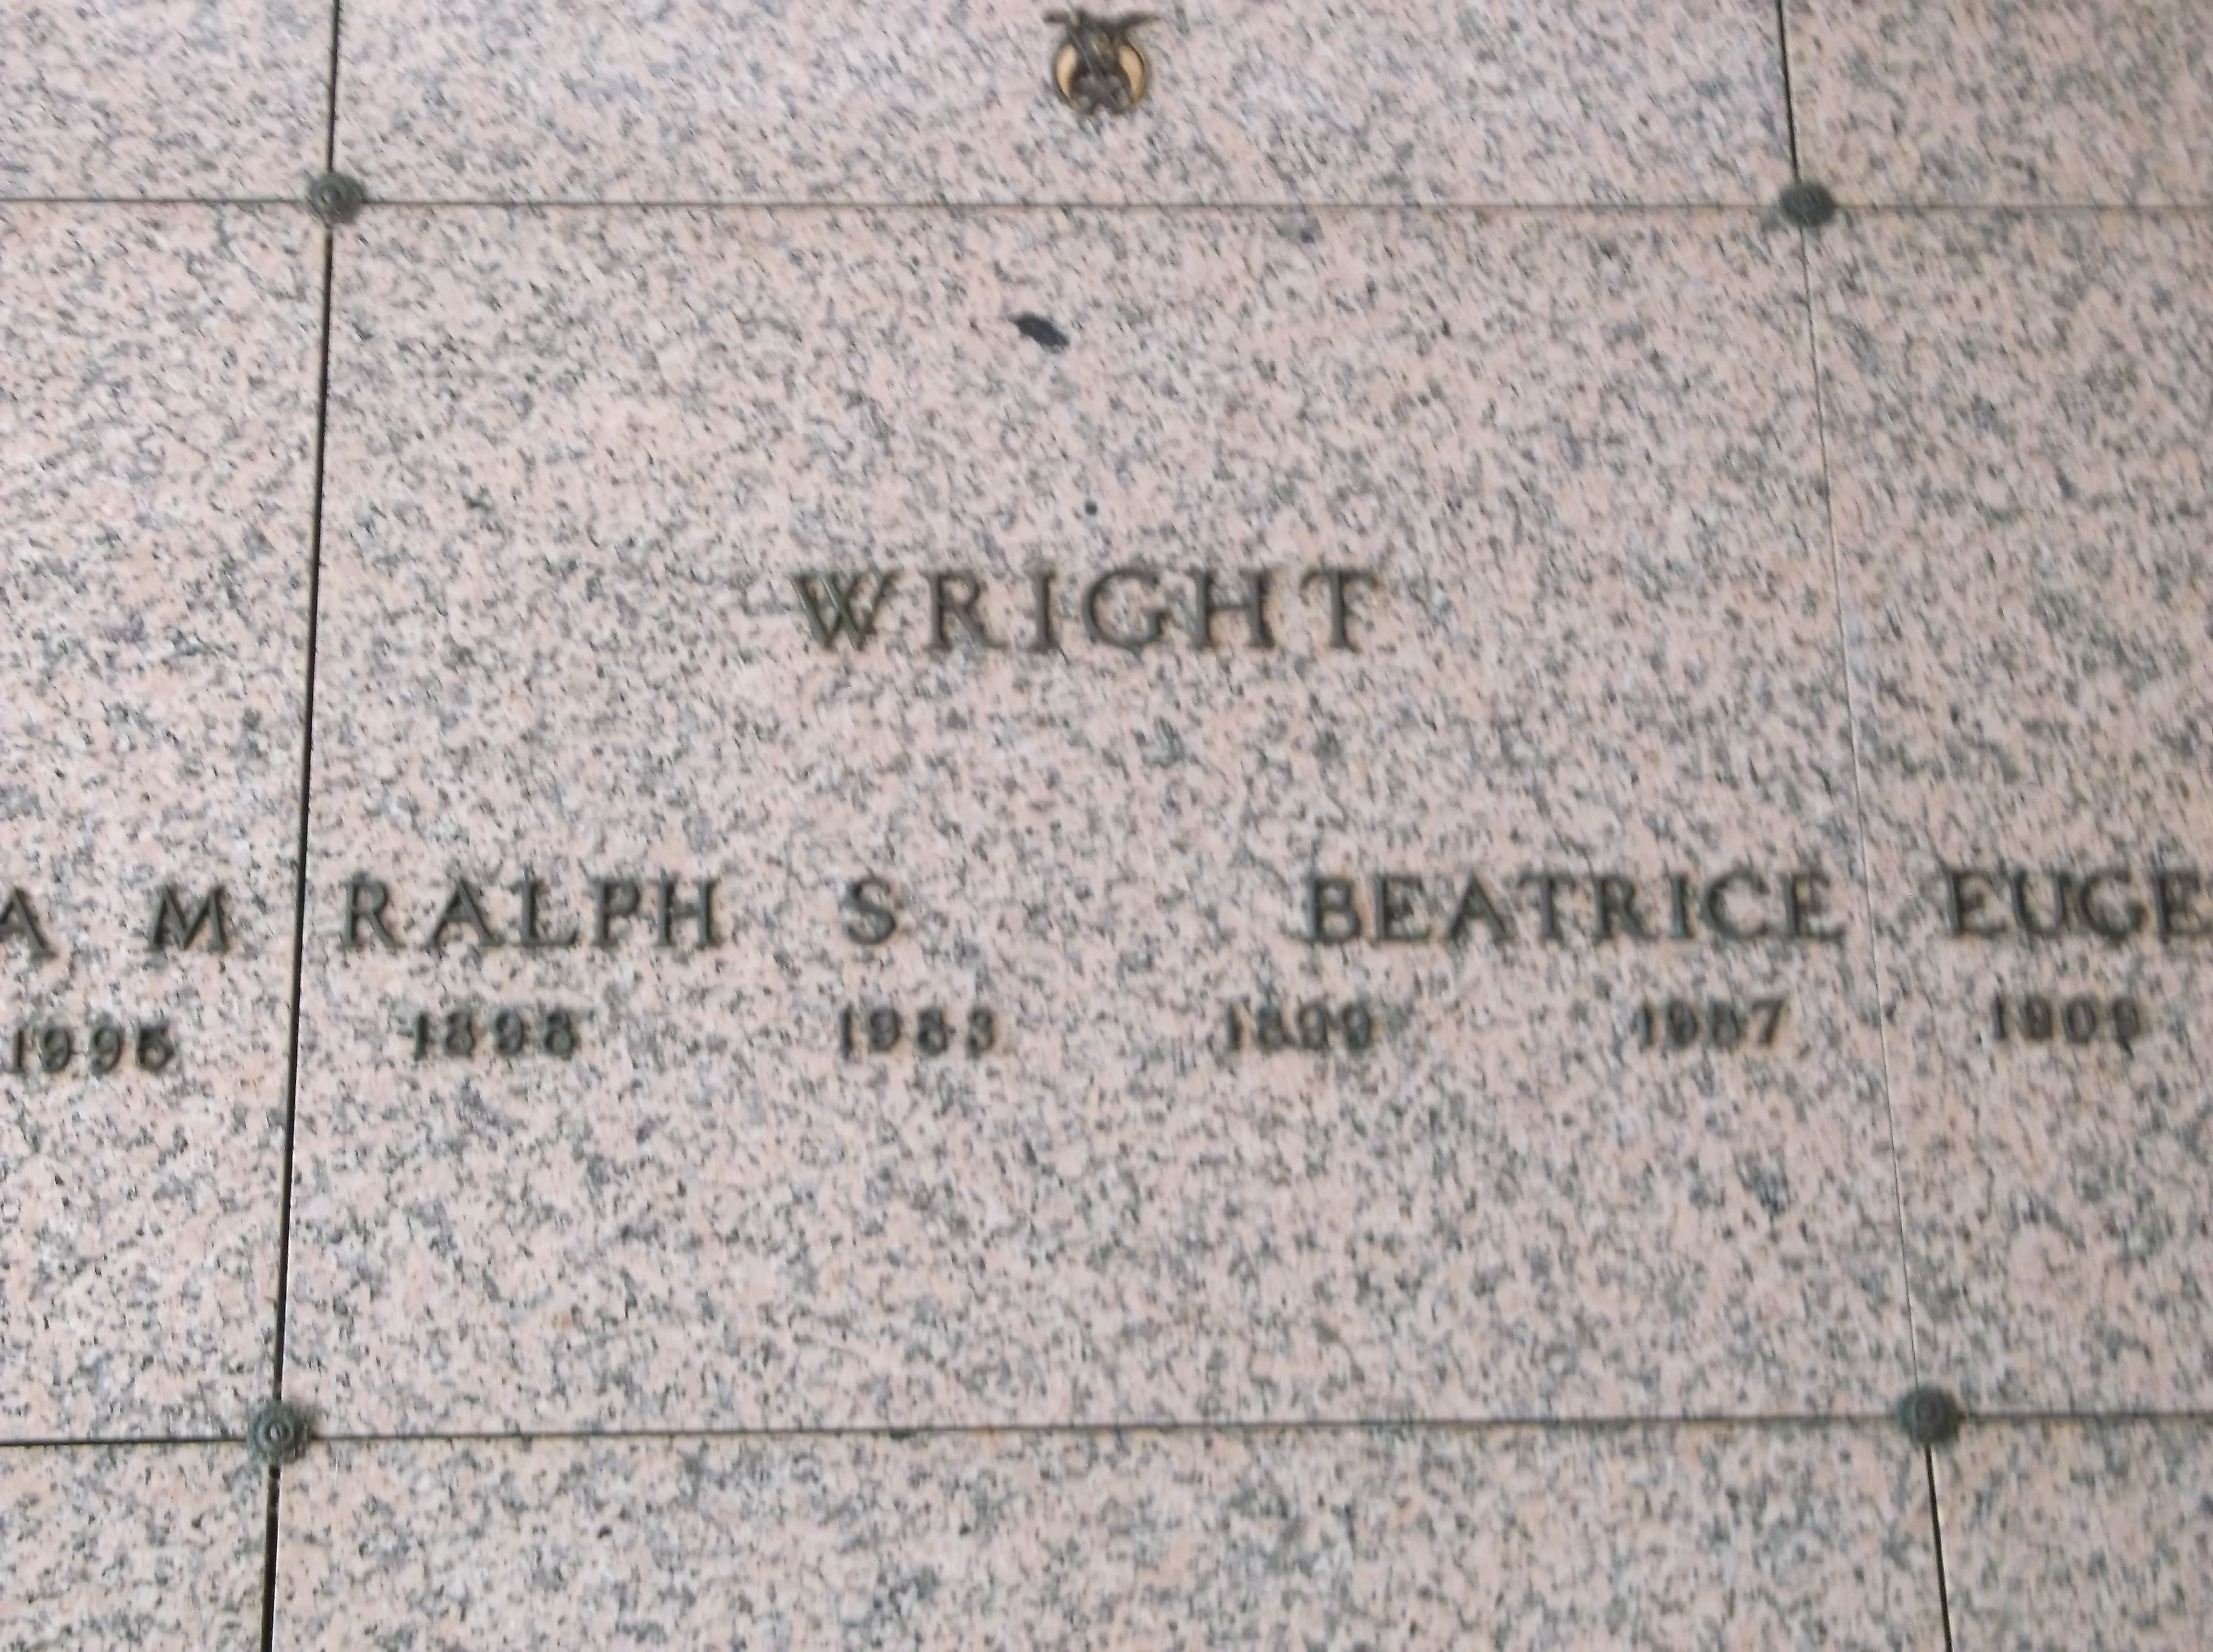 Ralph S Wright